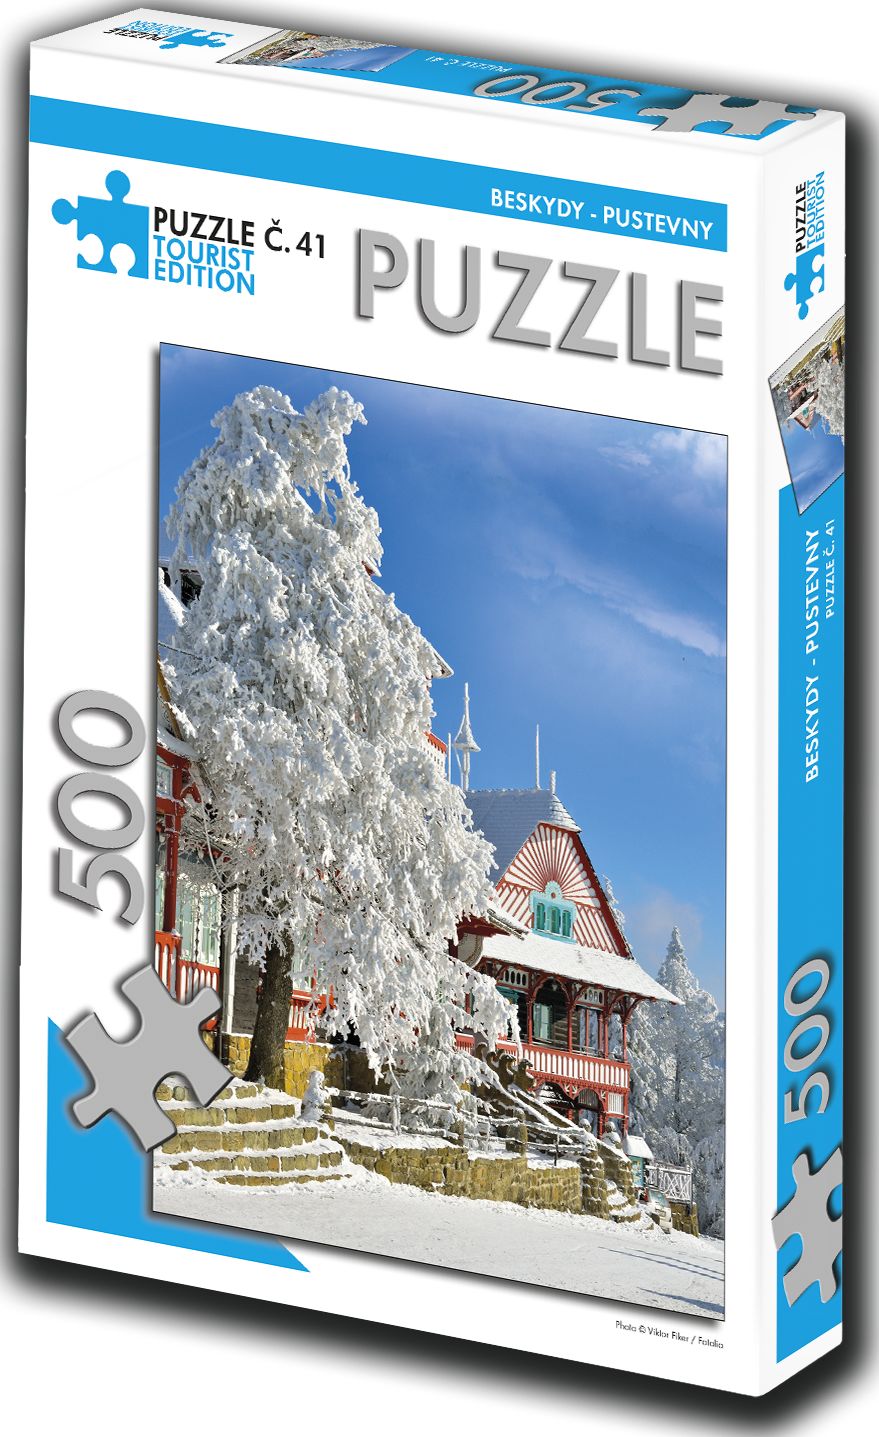 TOURIST EDITION Puzzle Beskydy, Pustevny 500 dílků (č.41) - obrázek 1